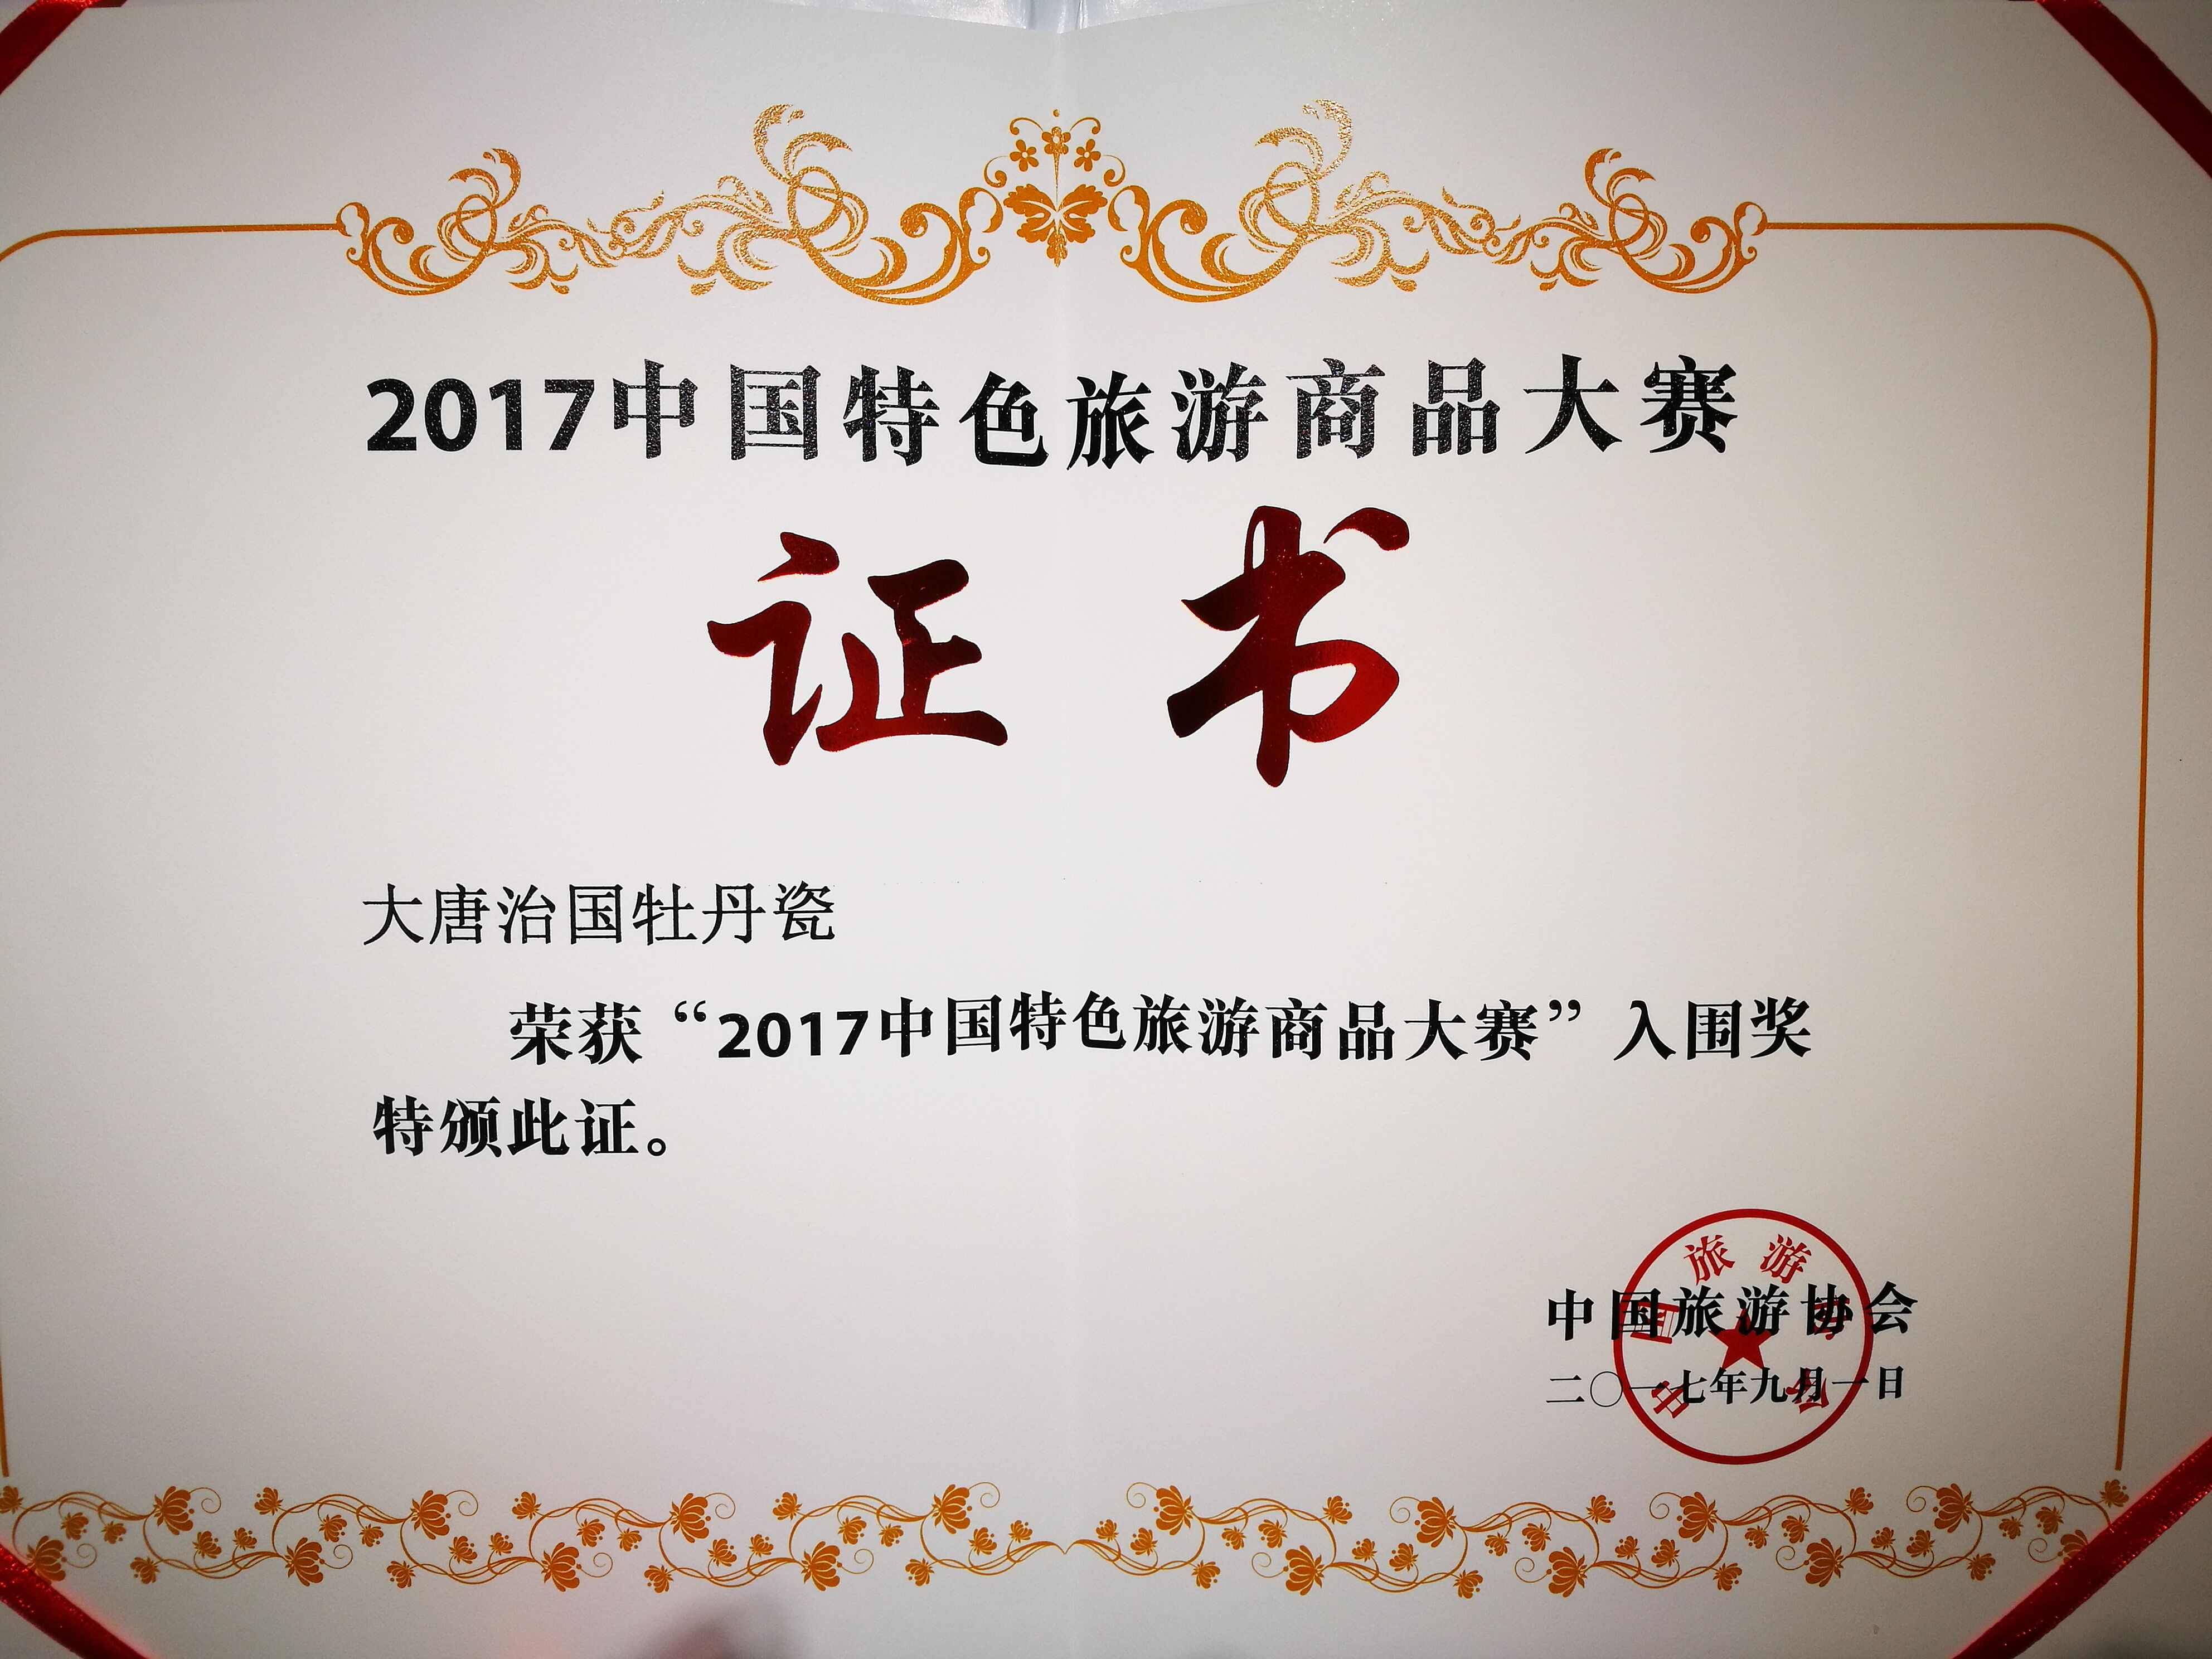 荣获“2017中国特色旅游商品大赛”入围奖